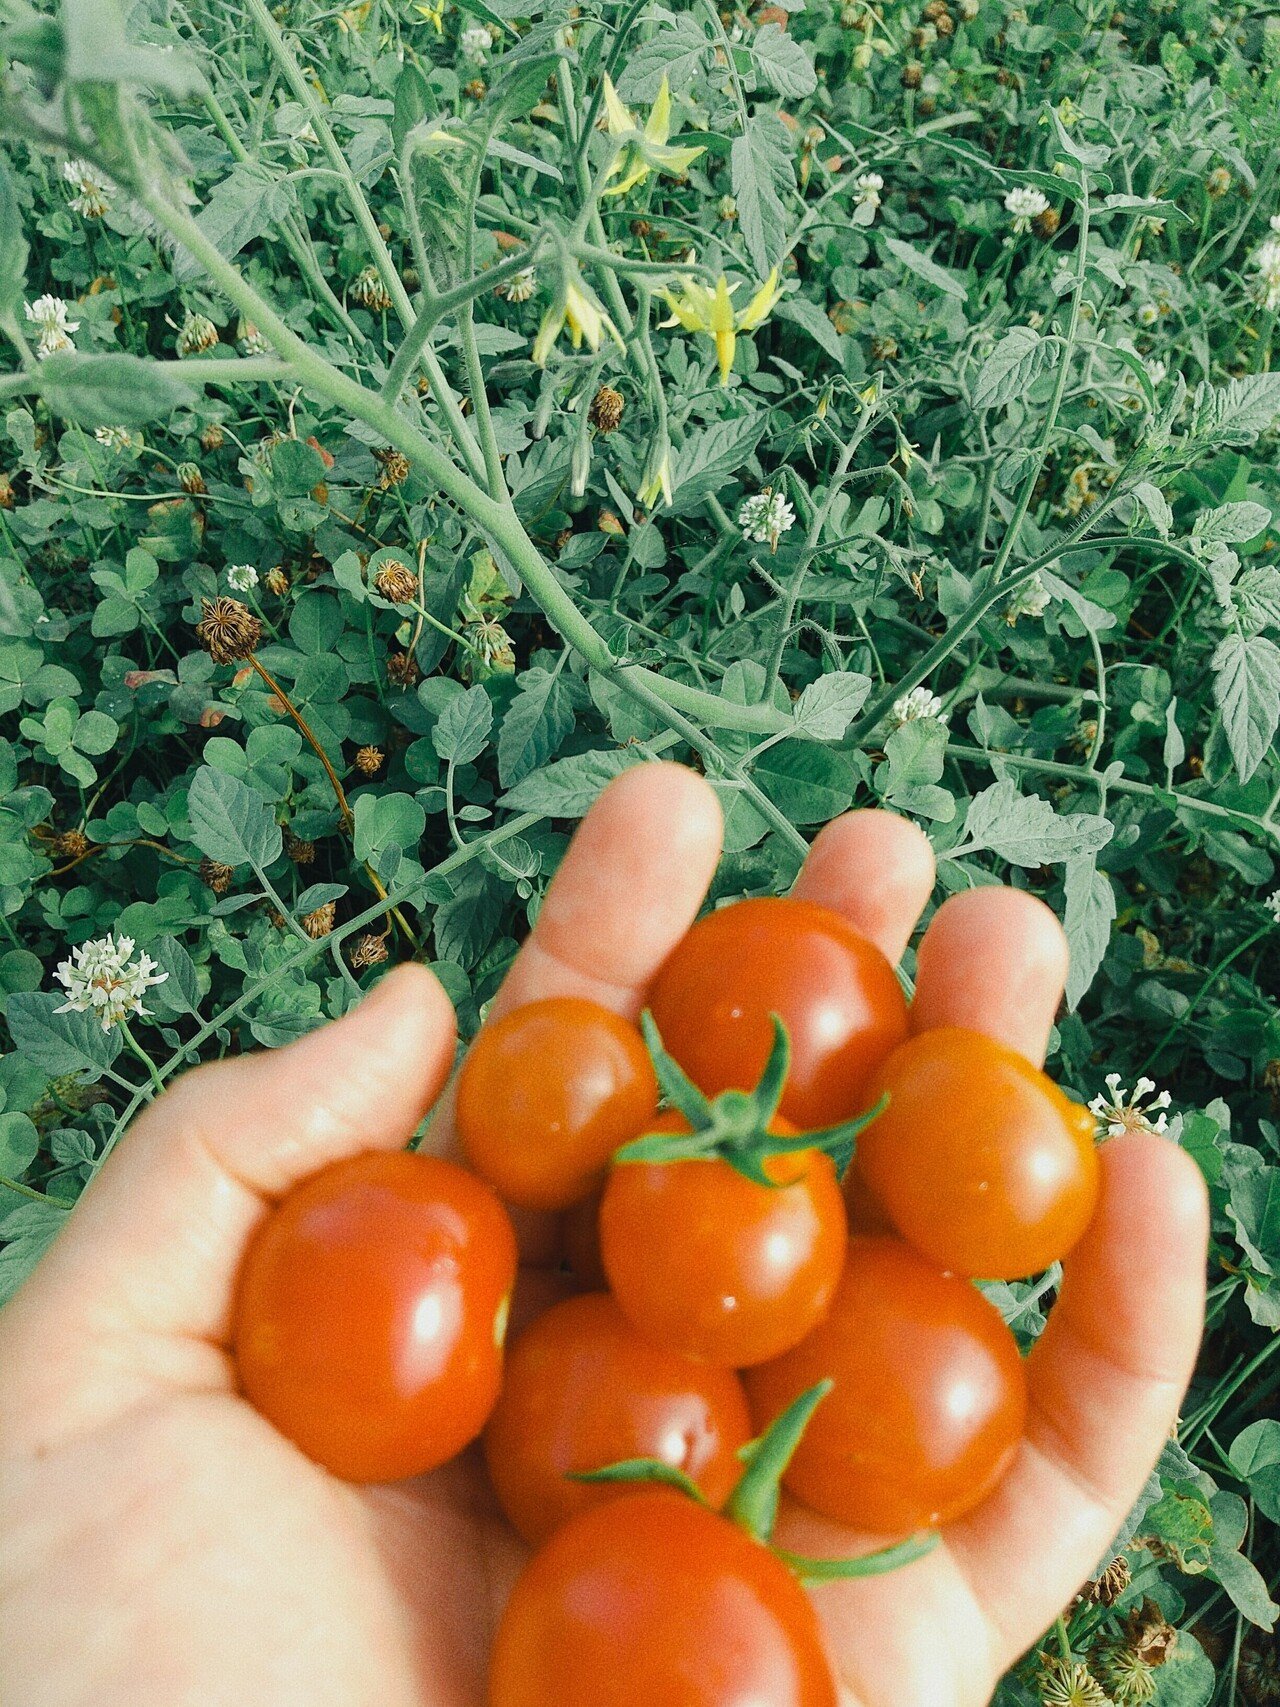 おはようドグ ドグ子 トマトの自然農法に成功したドグ O 去年 収穫が遅れて腐ったミニトマト を 畑にテキトーに投げていたドグ子 翌年 草の間から見事なトマトが実りましたドグ O 山田スイッチ Note